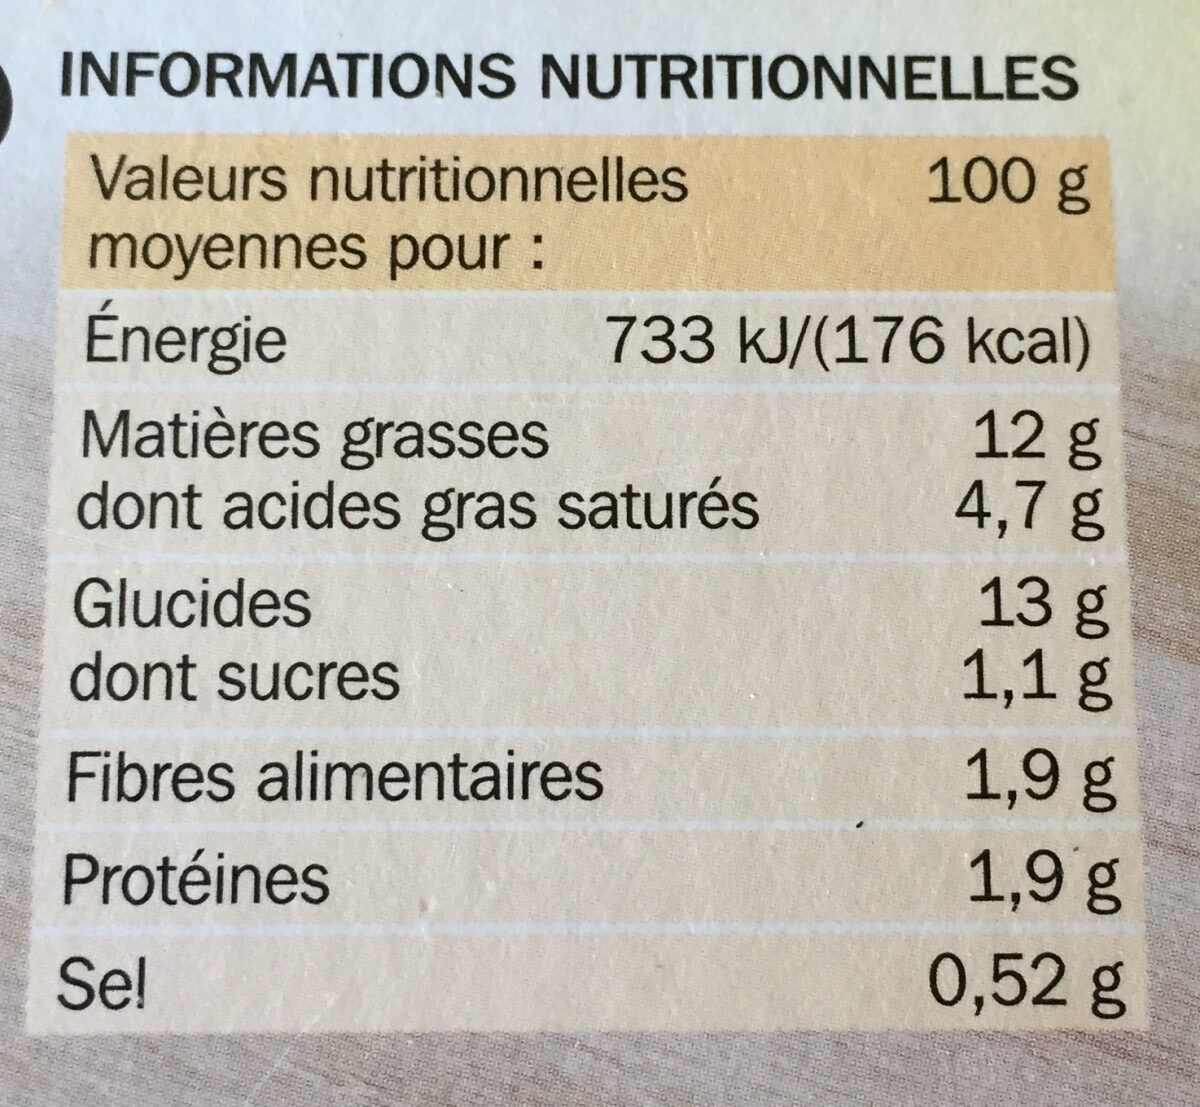 Lingots d'ecrasée de pommes de terre aux nousettes - Nutrition facts - fr